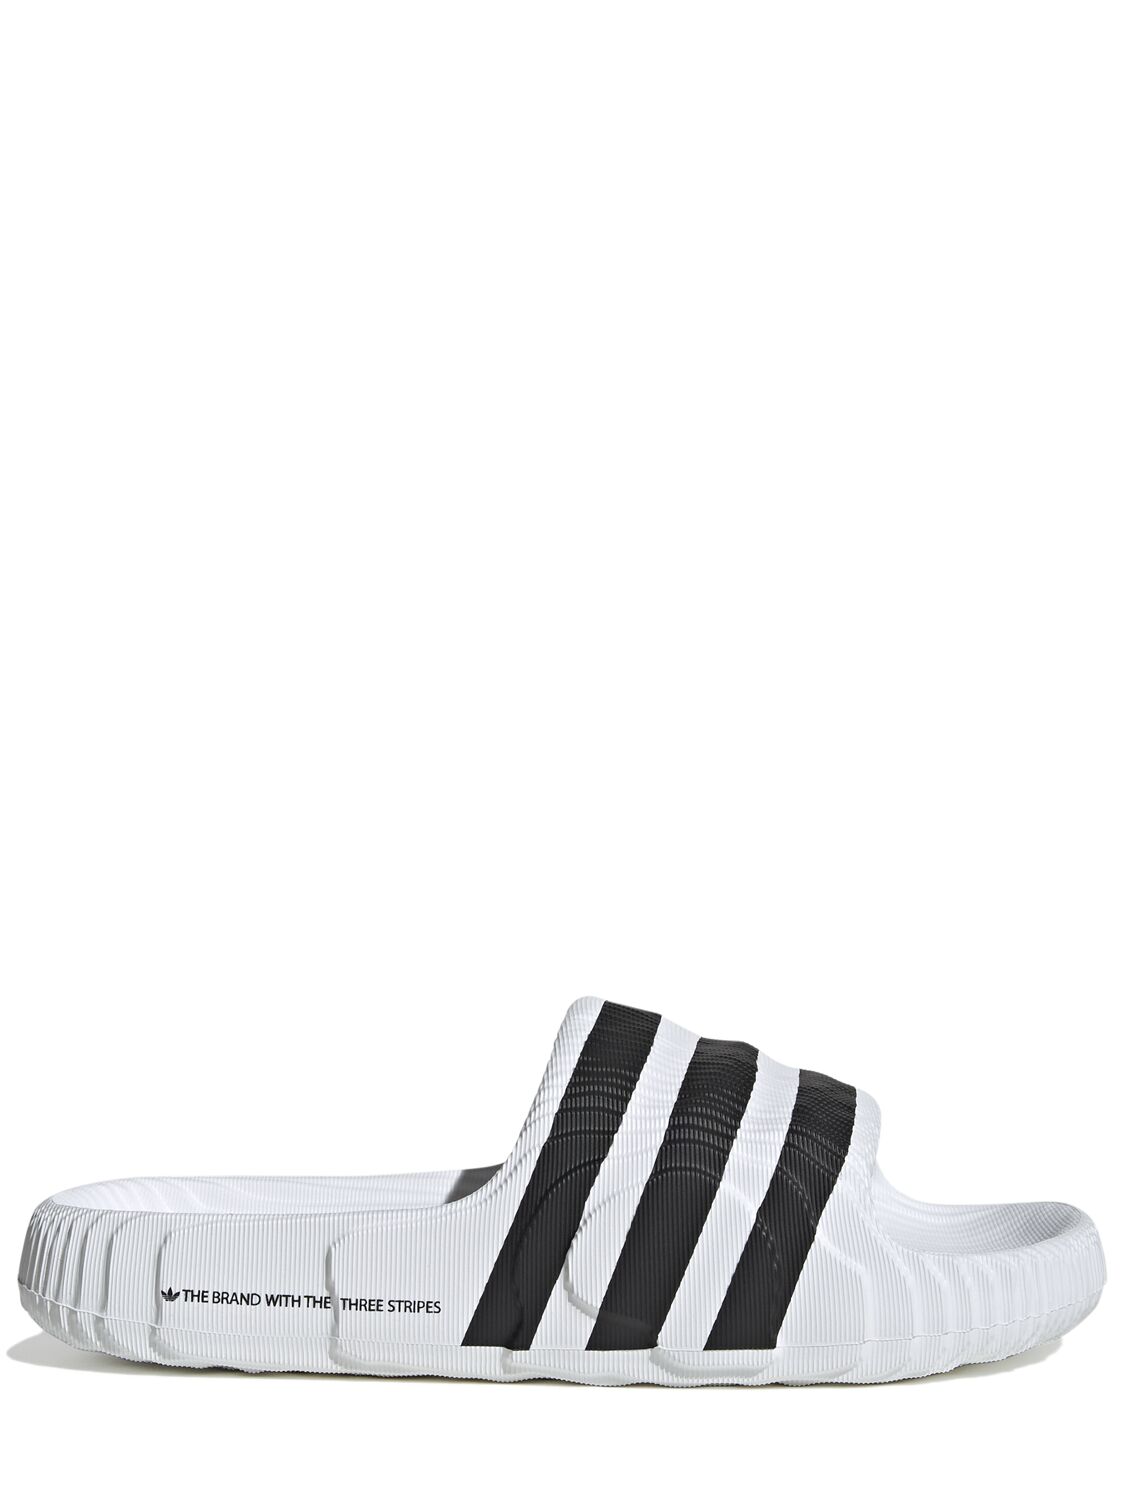 Adidas Originals Adilette 22 Slide Sandals In White,black